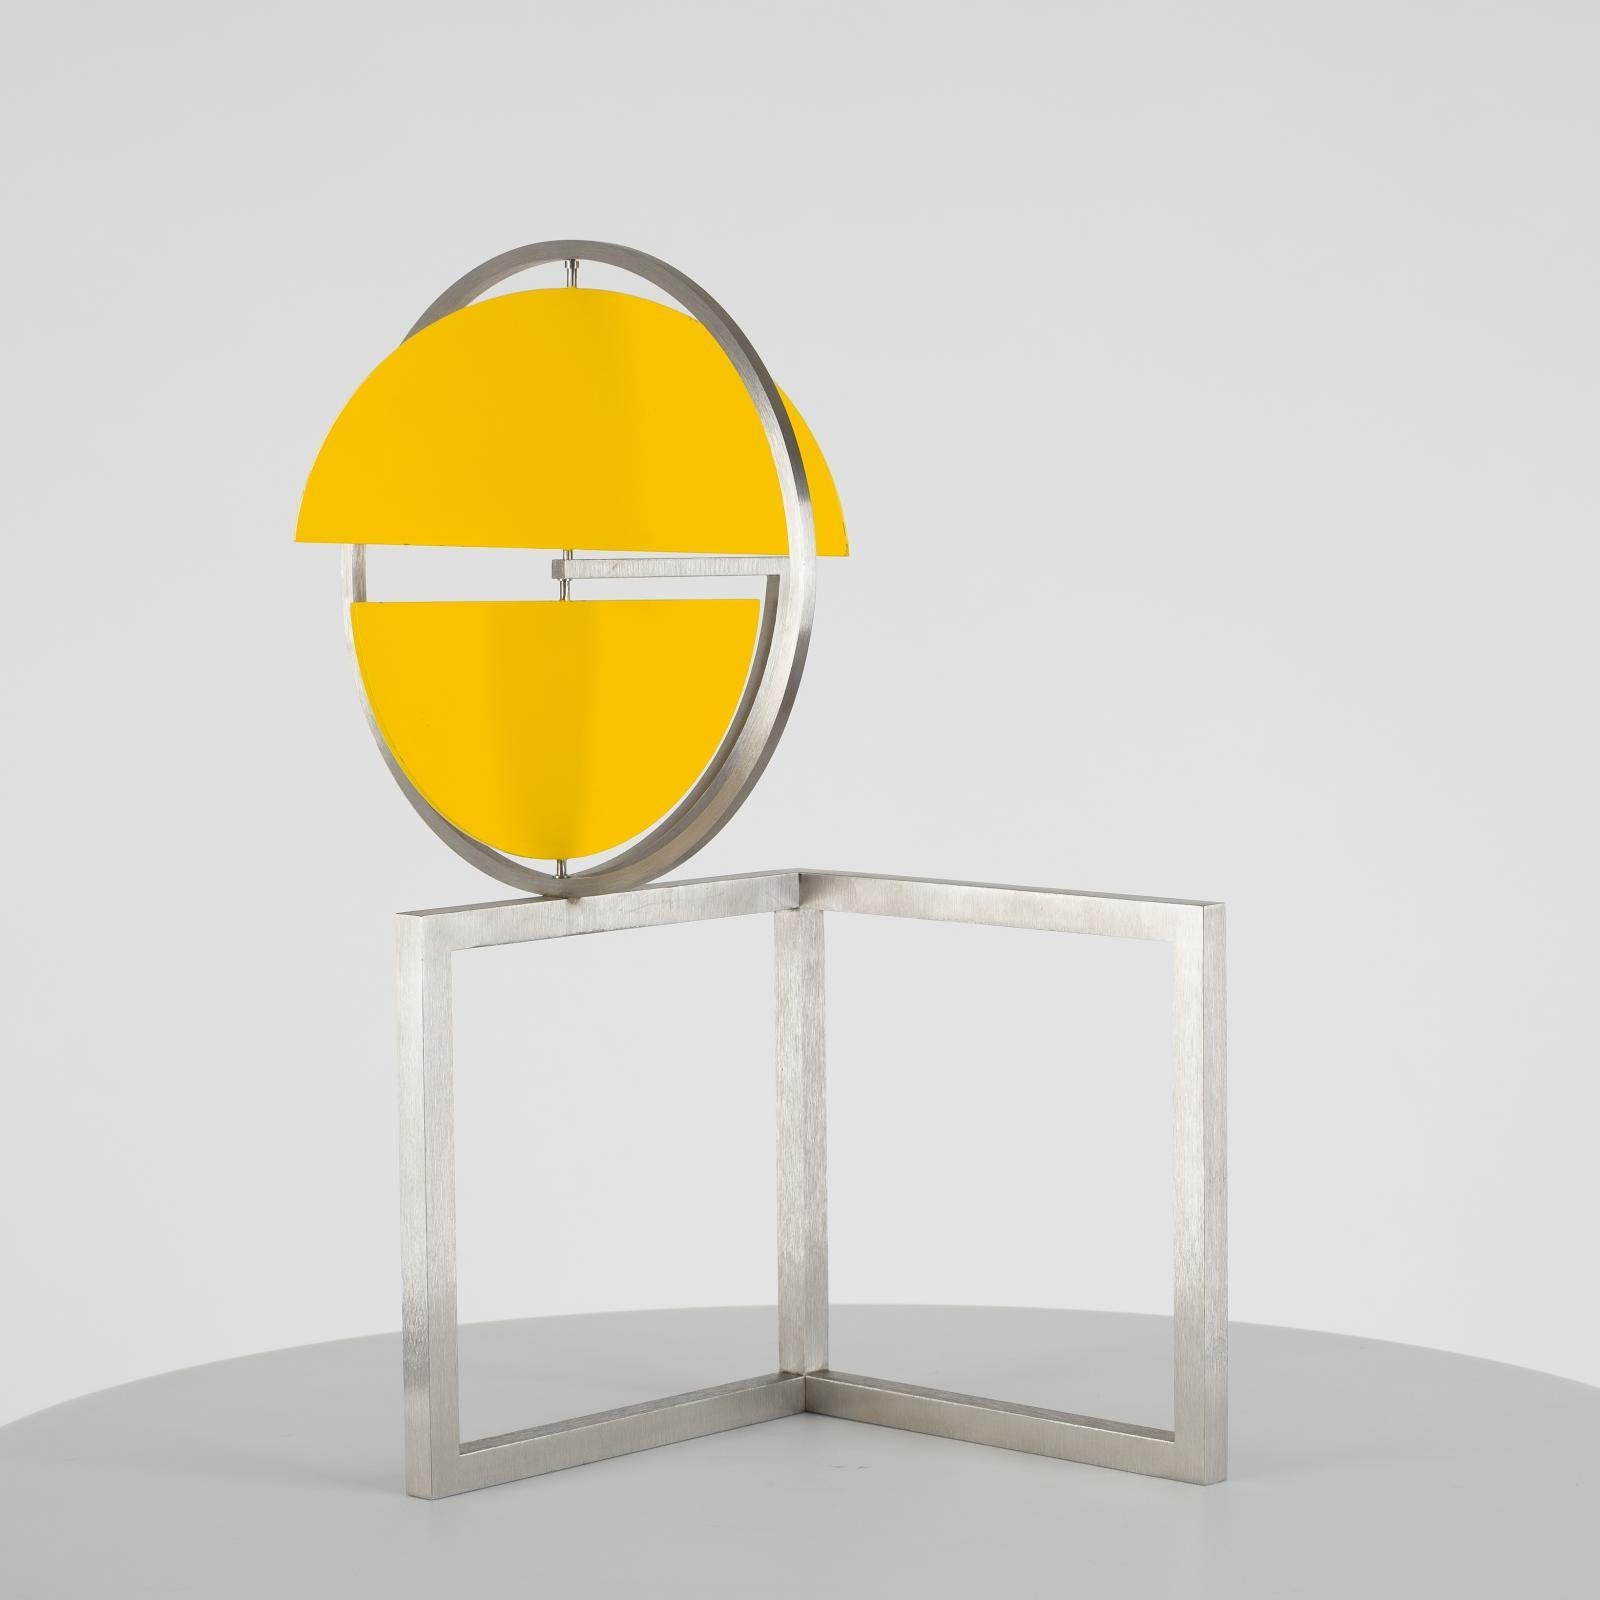 Abstract Sculpture Roger Phillips - Disc jaune sur deux carrés, sculpture cinétique